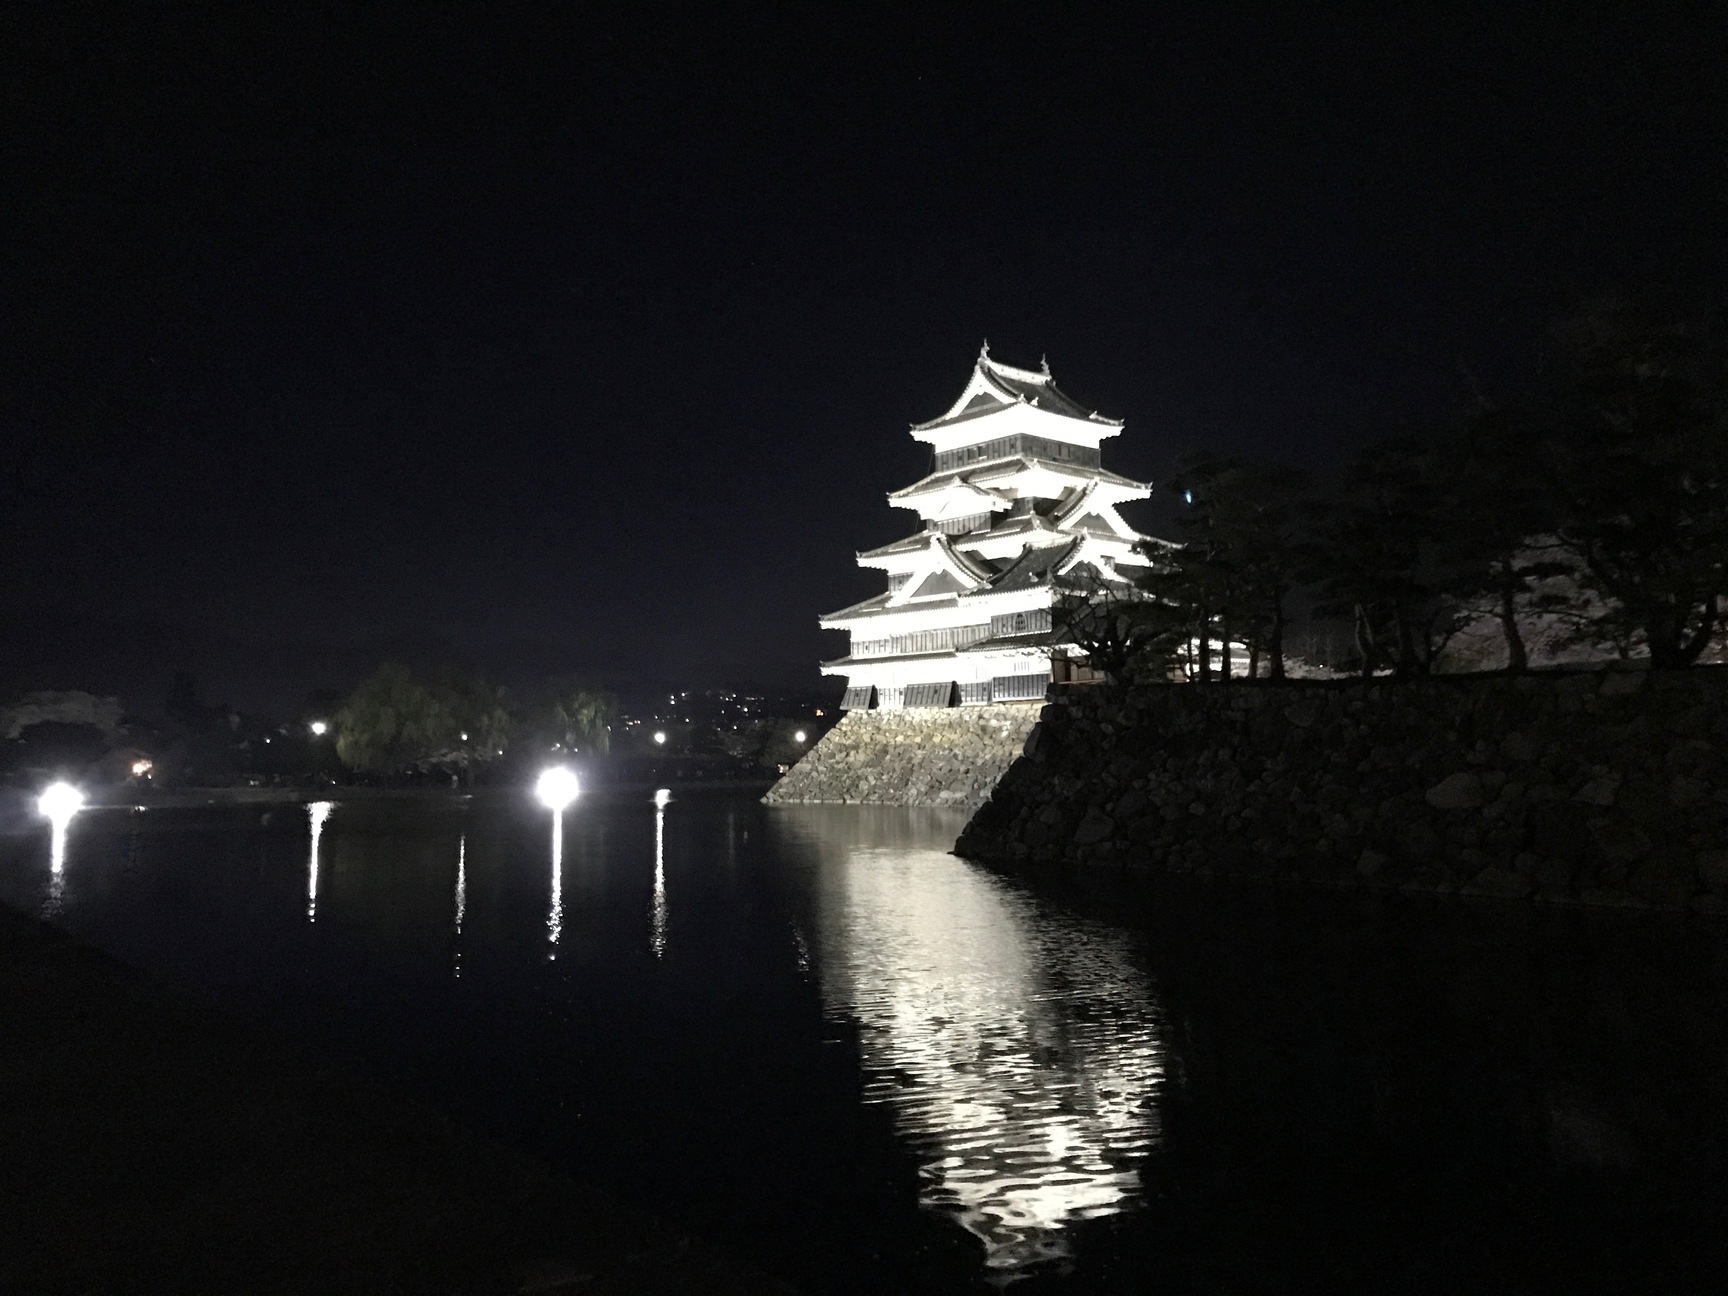 夜はライトアップで美しい松本城。写真では表せない美しさを是非ご自身でご覧ください